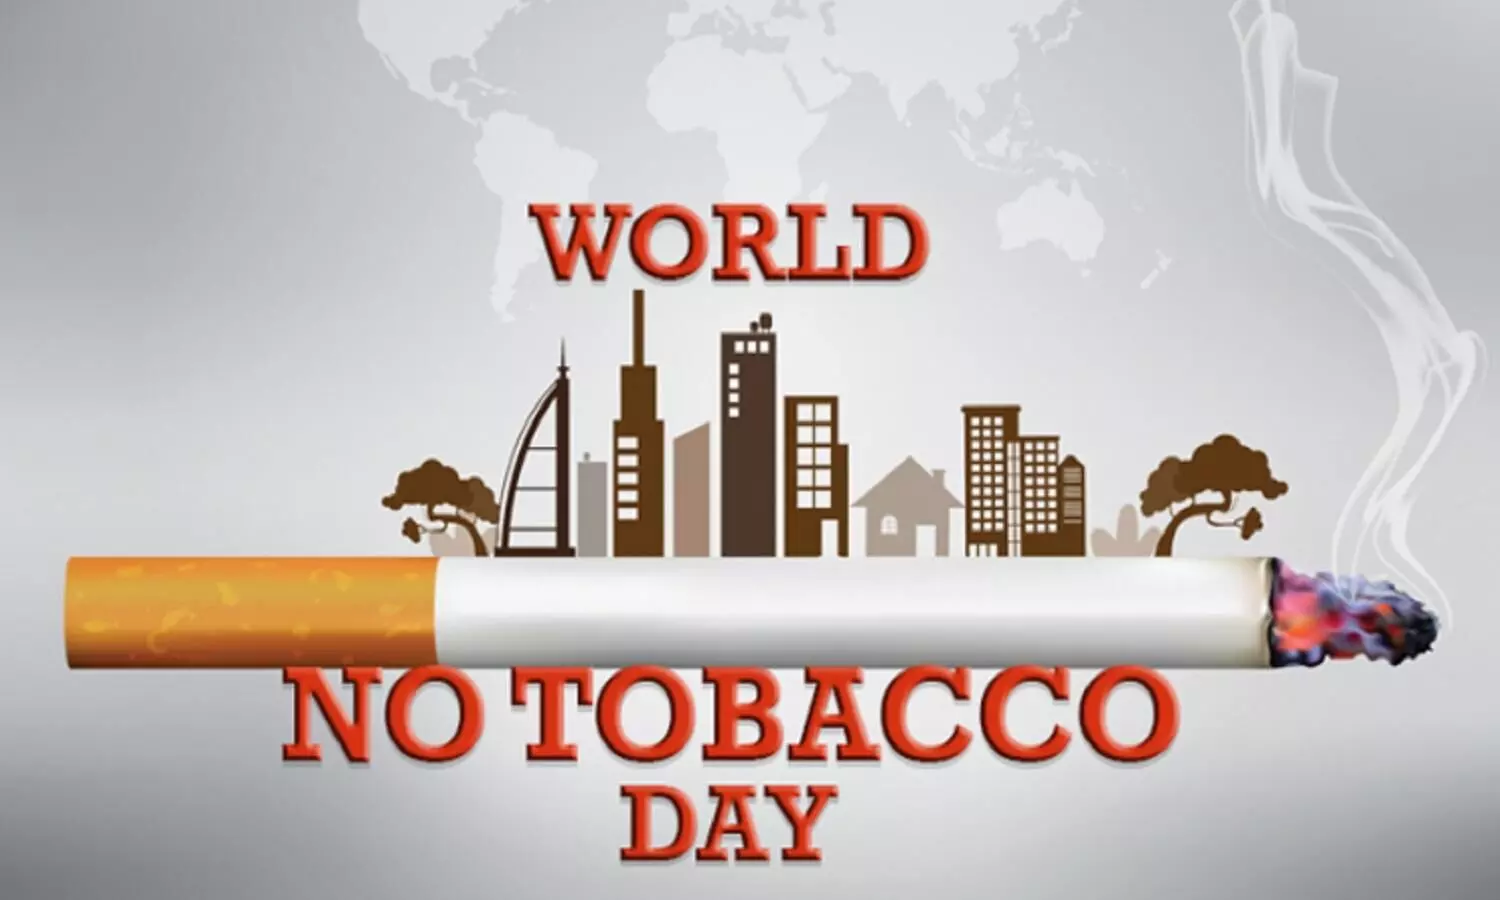 31 मई को विश्व तंबाकू निषेध दिवस मनाया जाता है